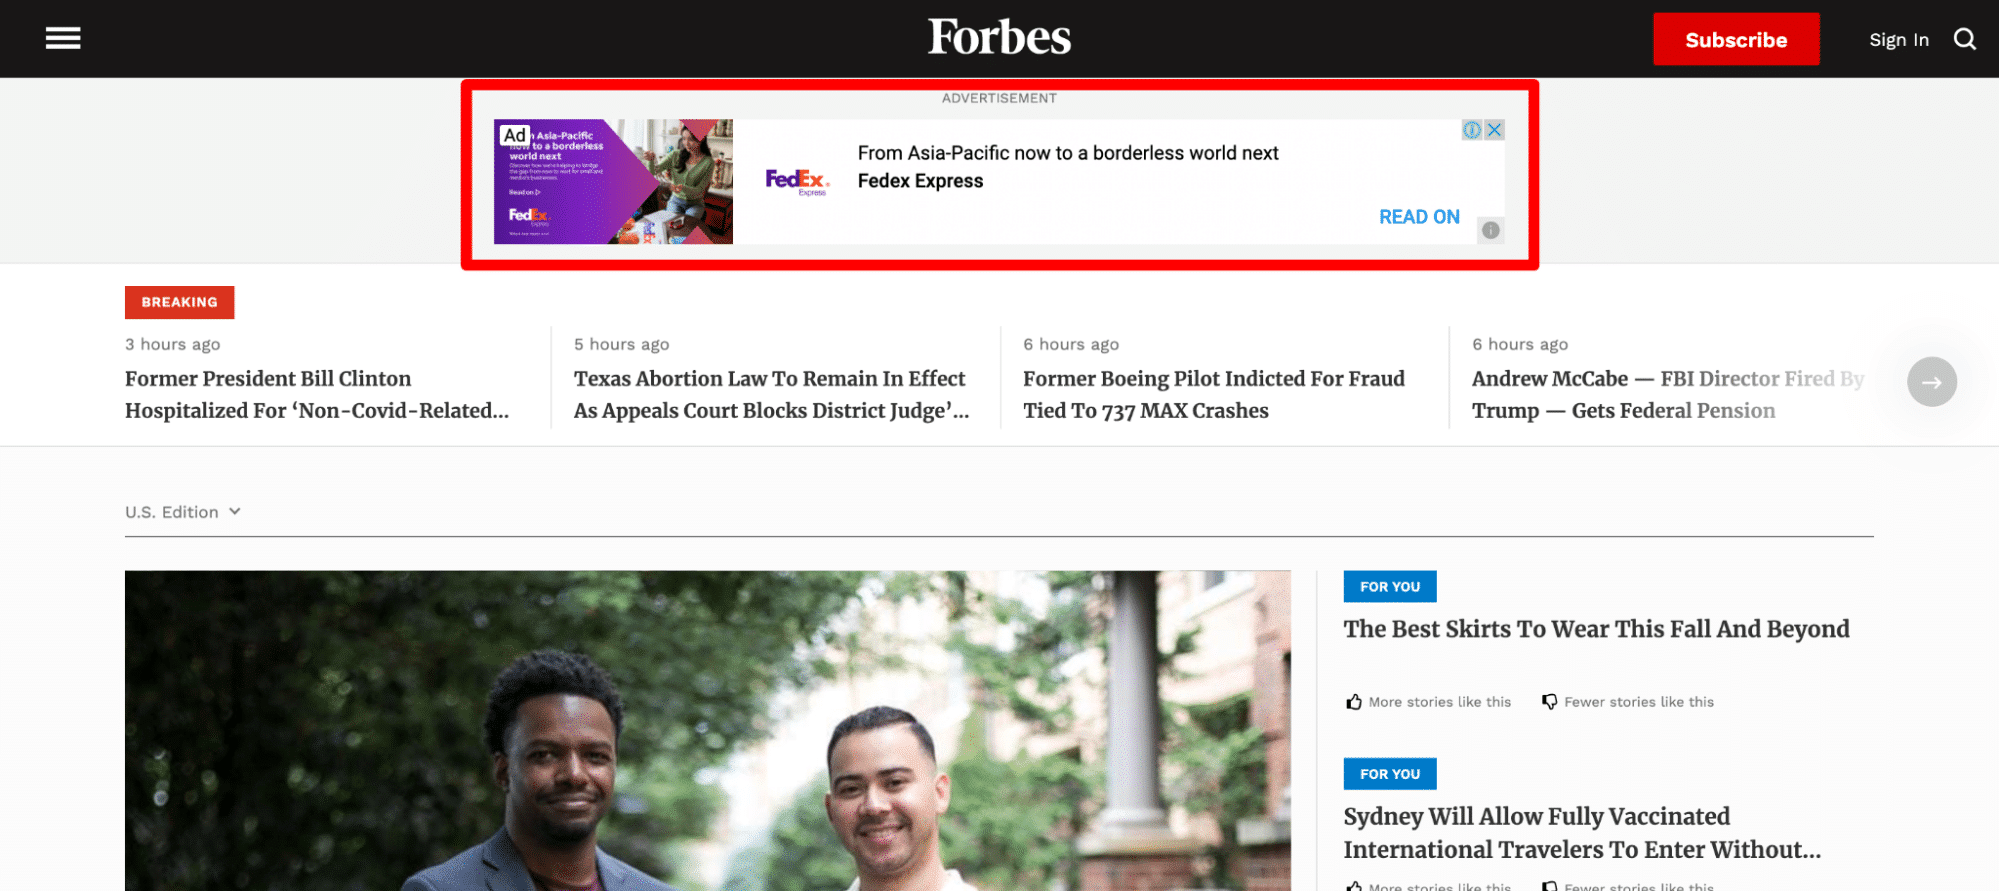 Anuncios en la página principal de Forbes.